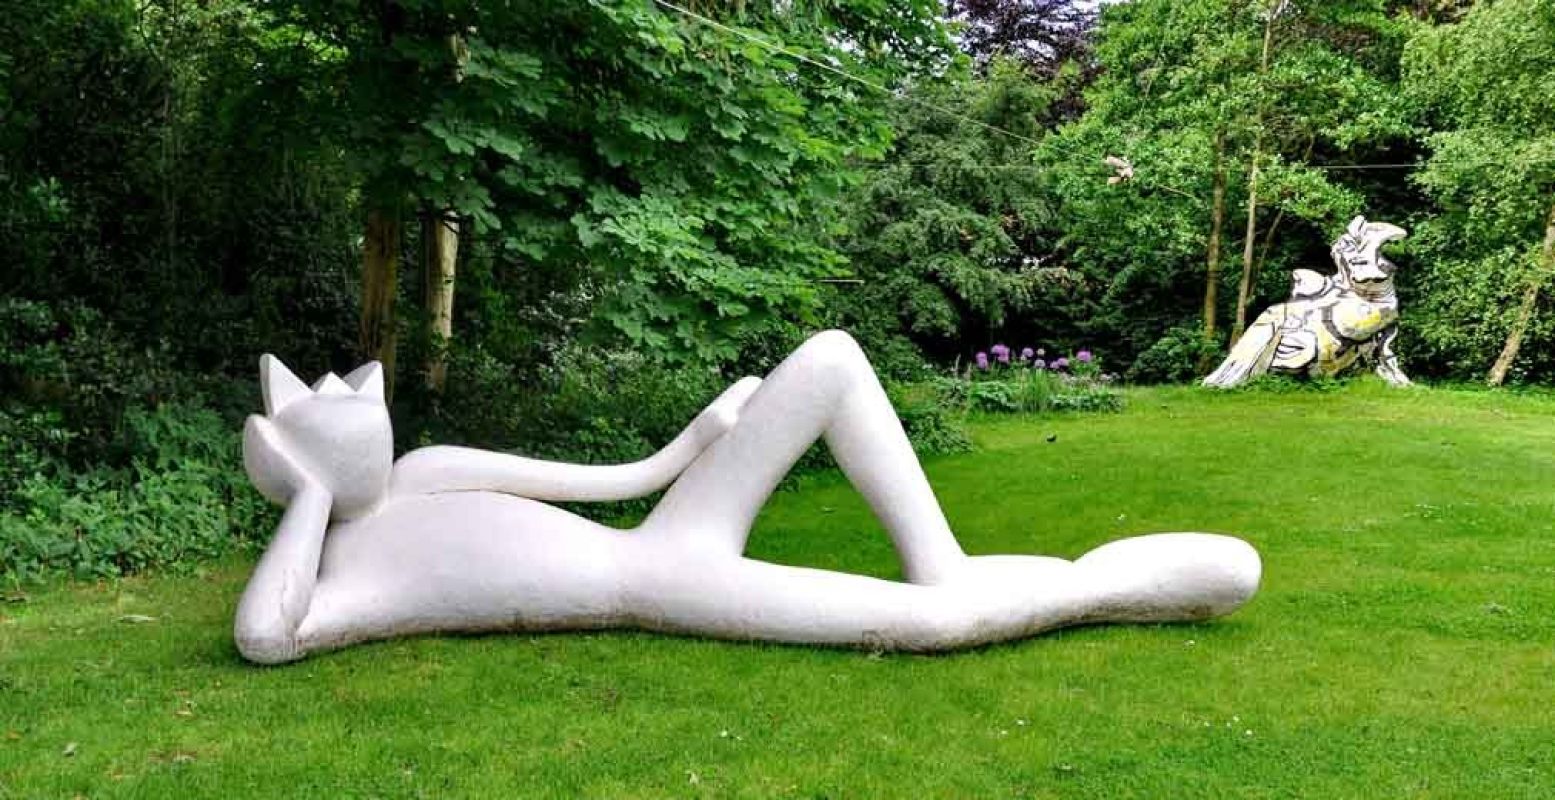 Overal kom je luierende sculpturen tegen. Alain Séchas, Lazy King, 2008. Foto Peter H. Toxopeus